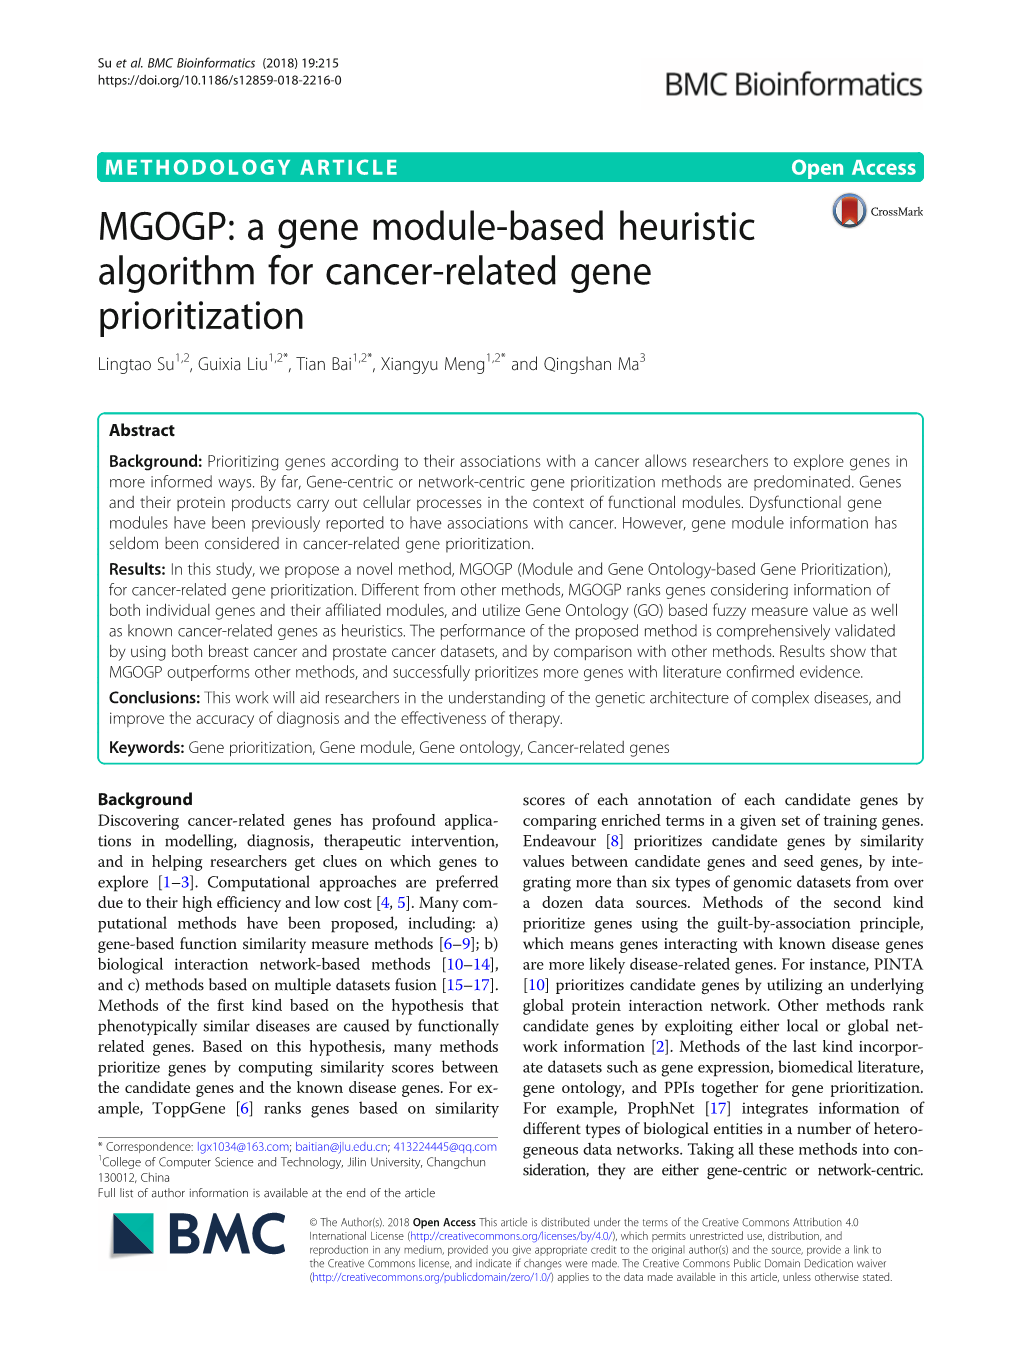 MGOGP: a Gene Module-Based Heuristic Algorithm for Cancer-Related Gene Prioritization Lingtao Su1,2, Guixia Liu1,2*, Tian Bai1,2*, Xiangyu Meng1,2* and Qingshan Ma3